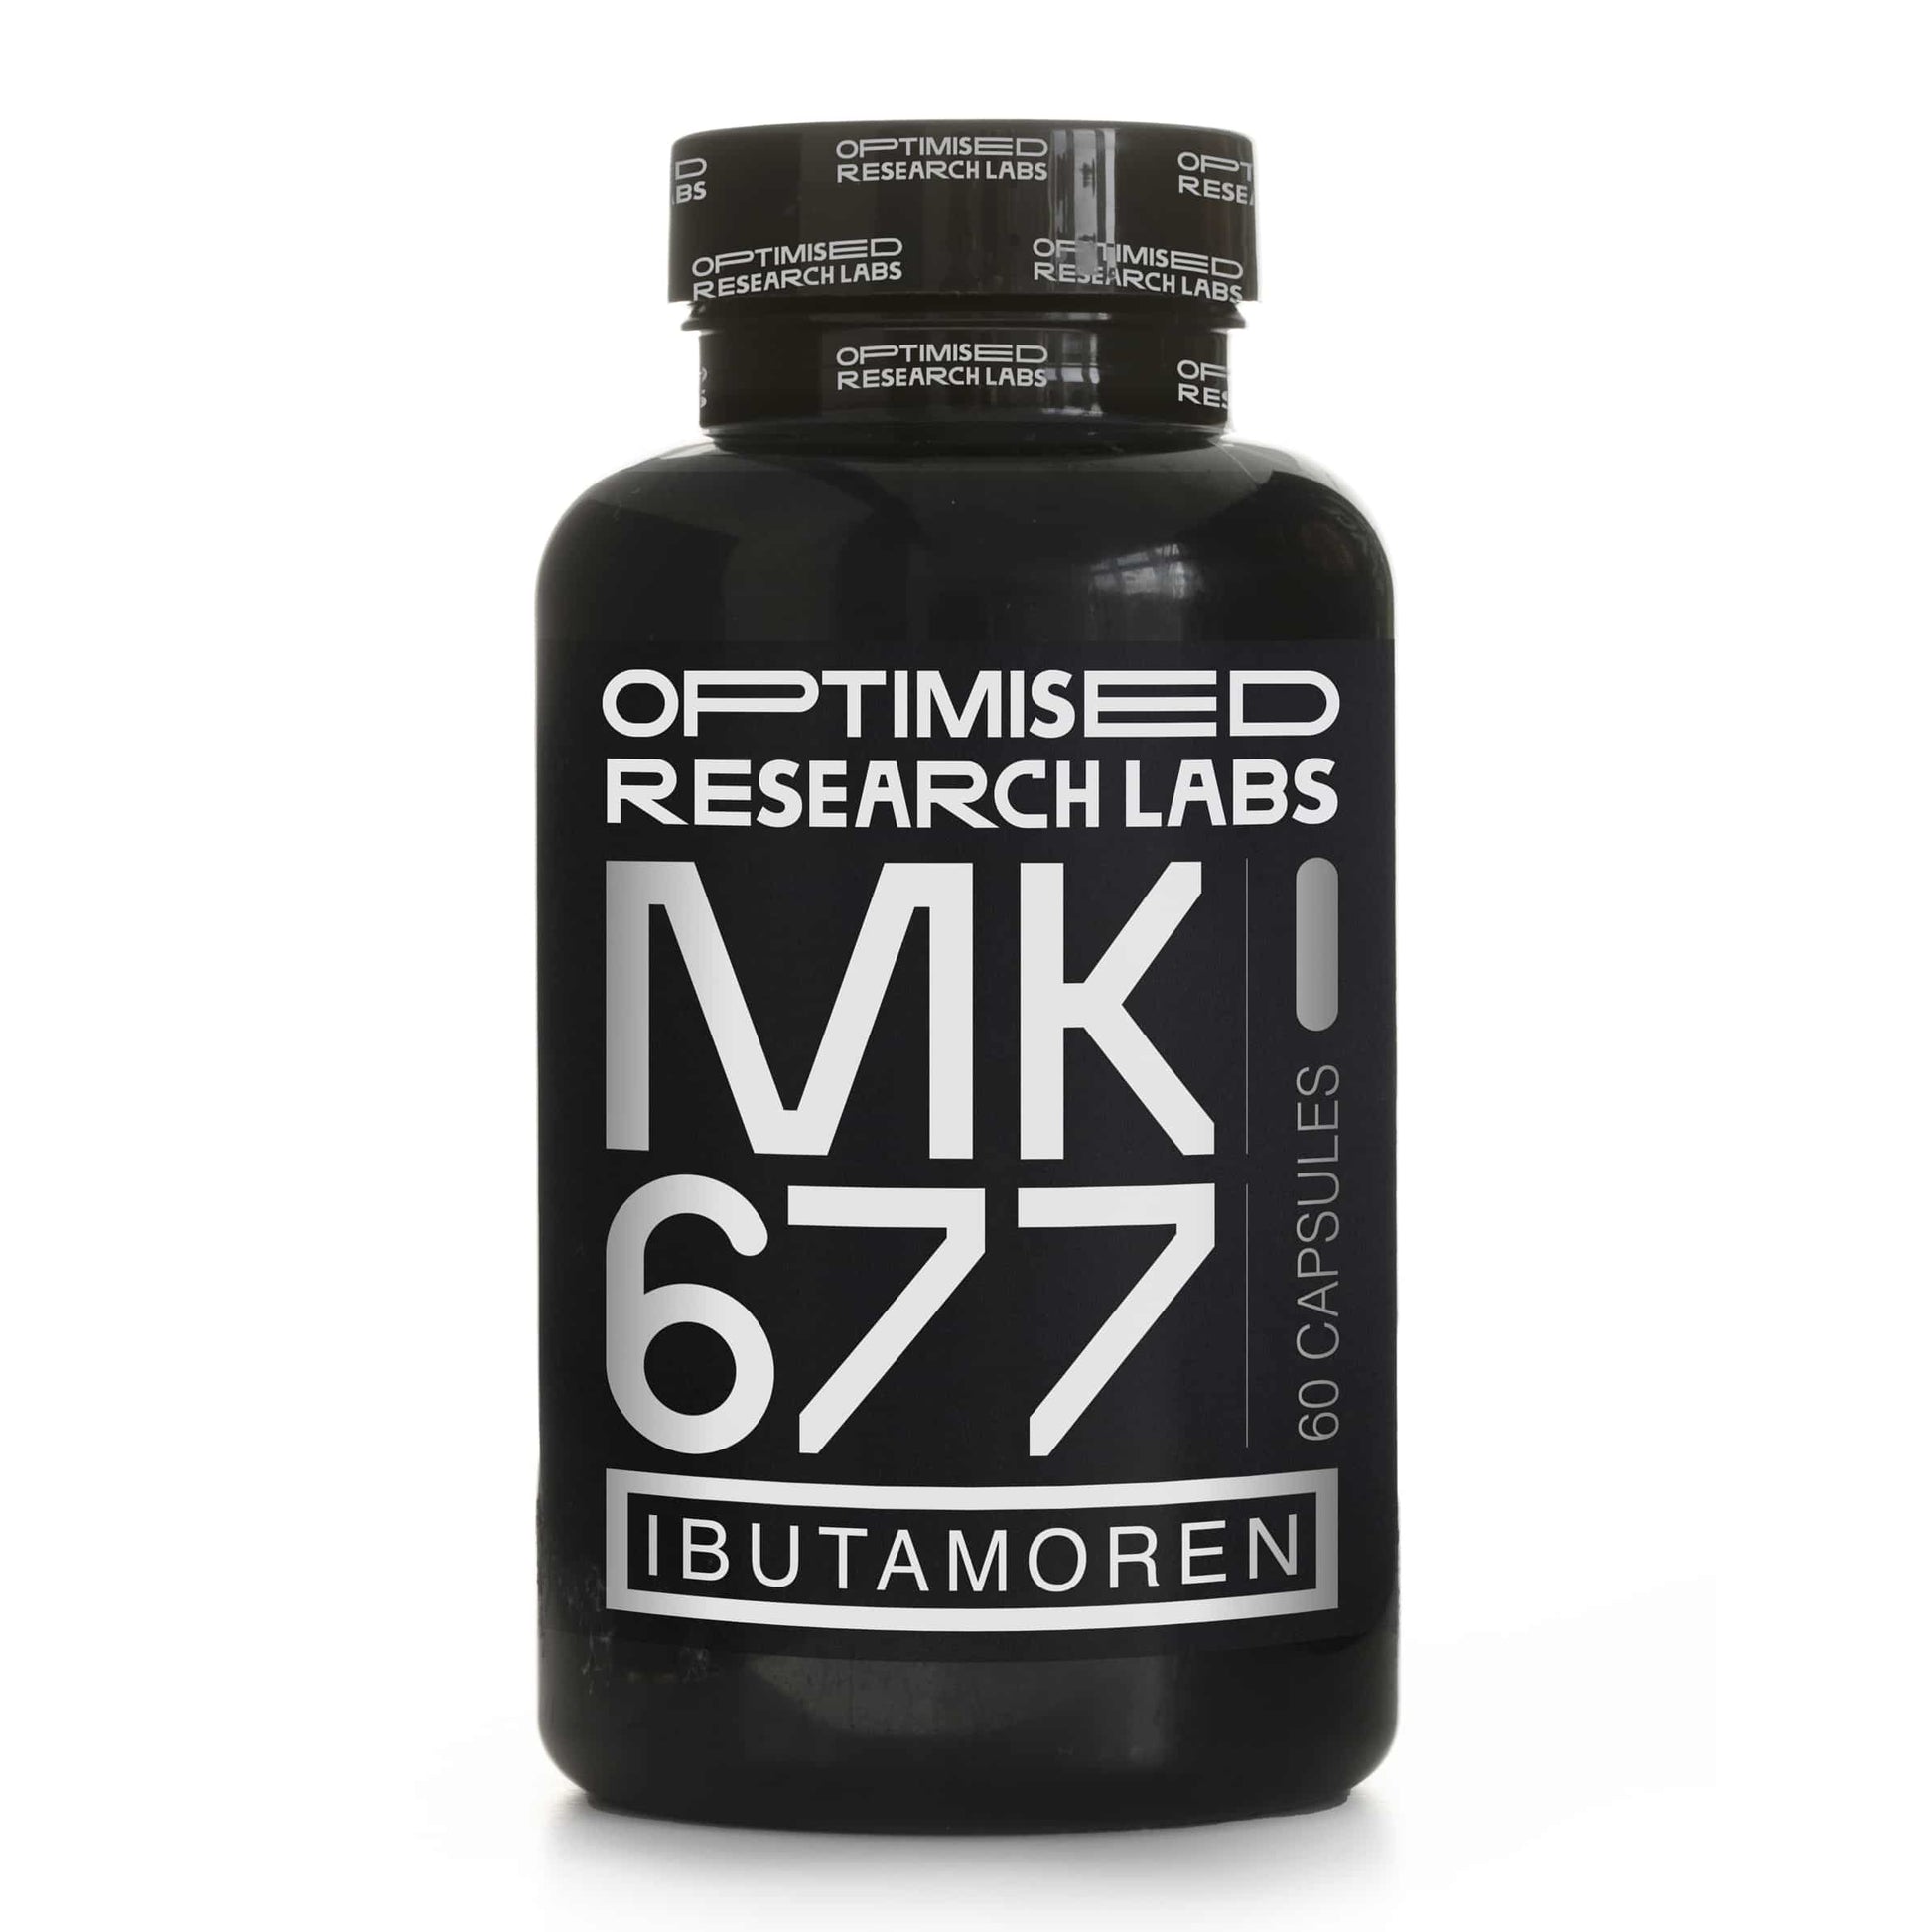 ORL Ibutamoren MK-677 | Weight Gain Supplements 